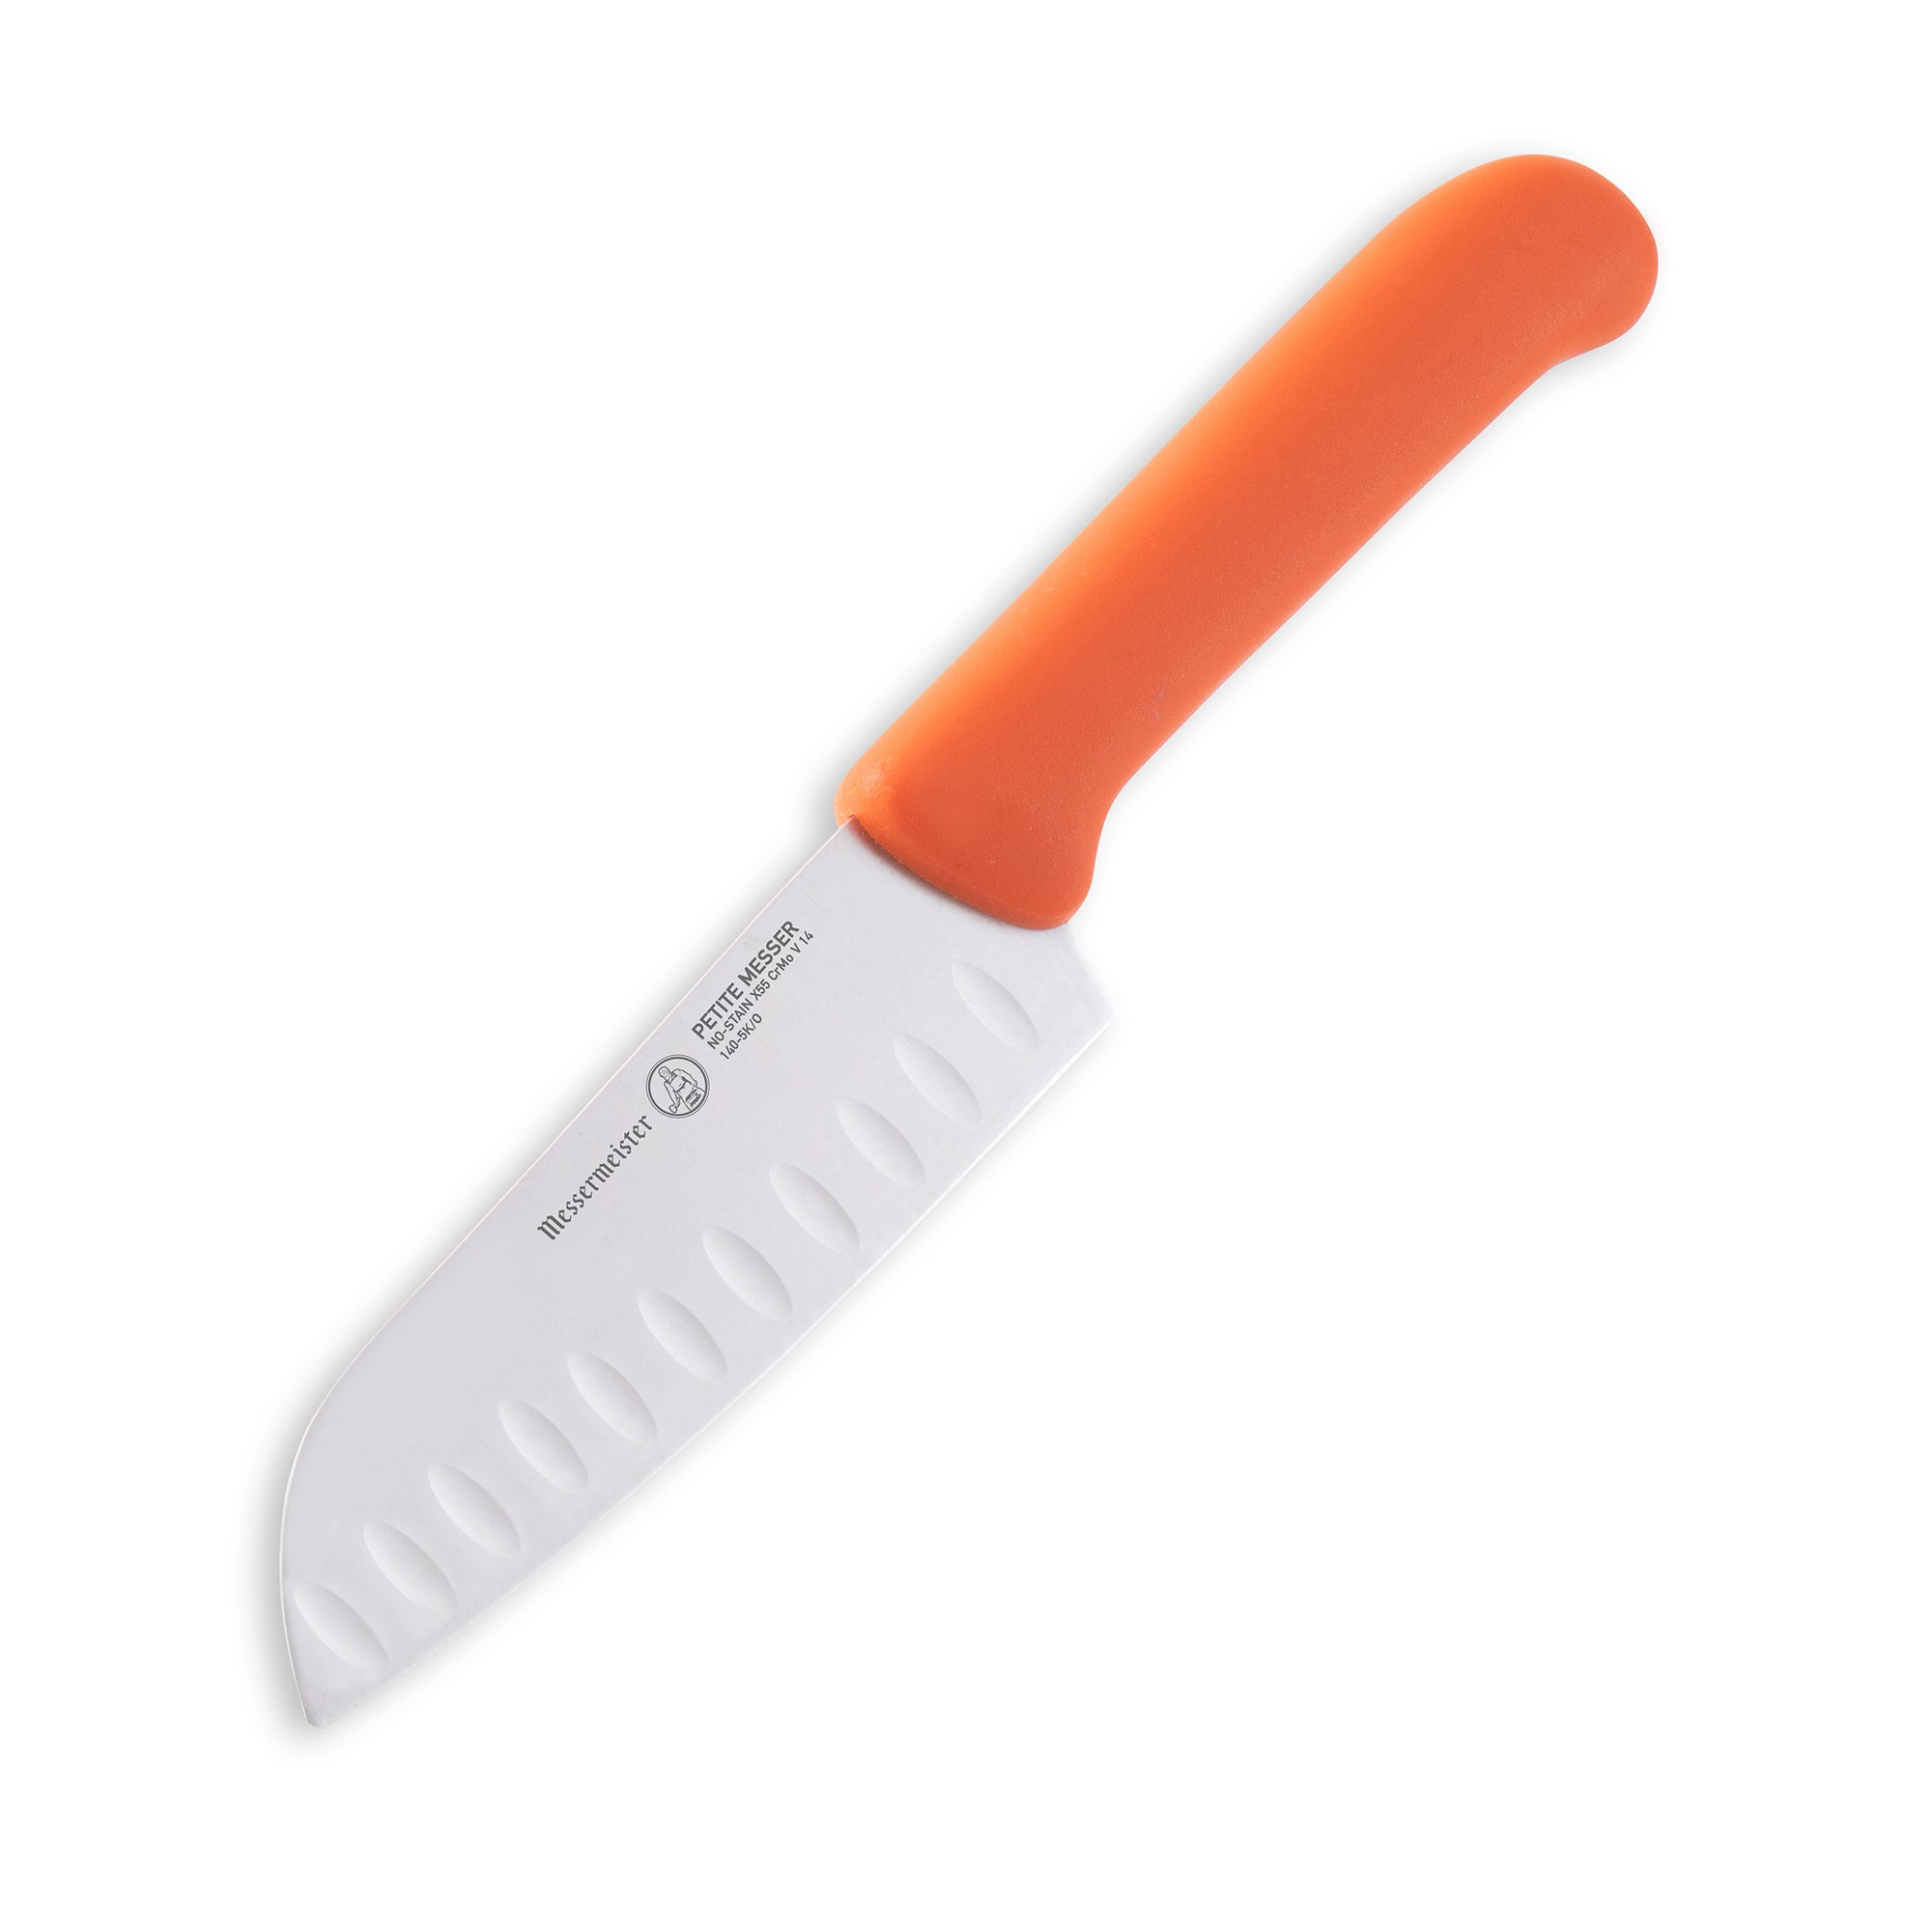 Petite Messer 5 Inch Kullenschliff Santoku Knife